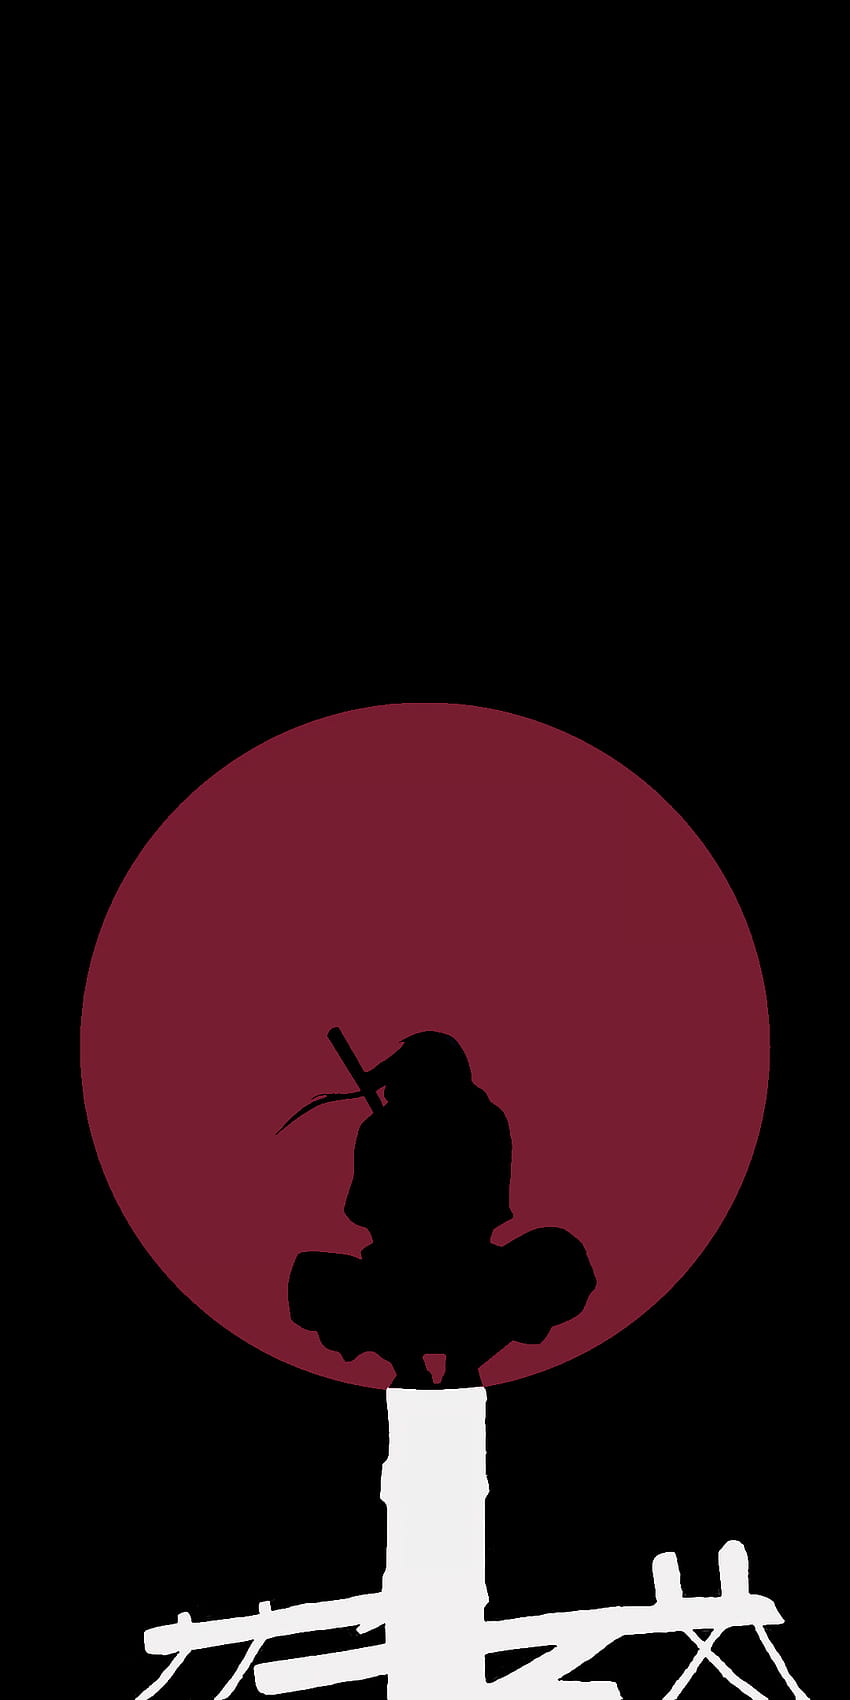 OC] Kolejny minimalistyczny Itachi. Sprawił, że księżyc był czerwony, a biegun biały, aby przypominały herb Uchiha. : Naruto, herb Tapeta na telefon HD